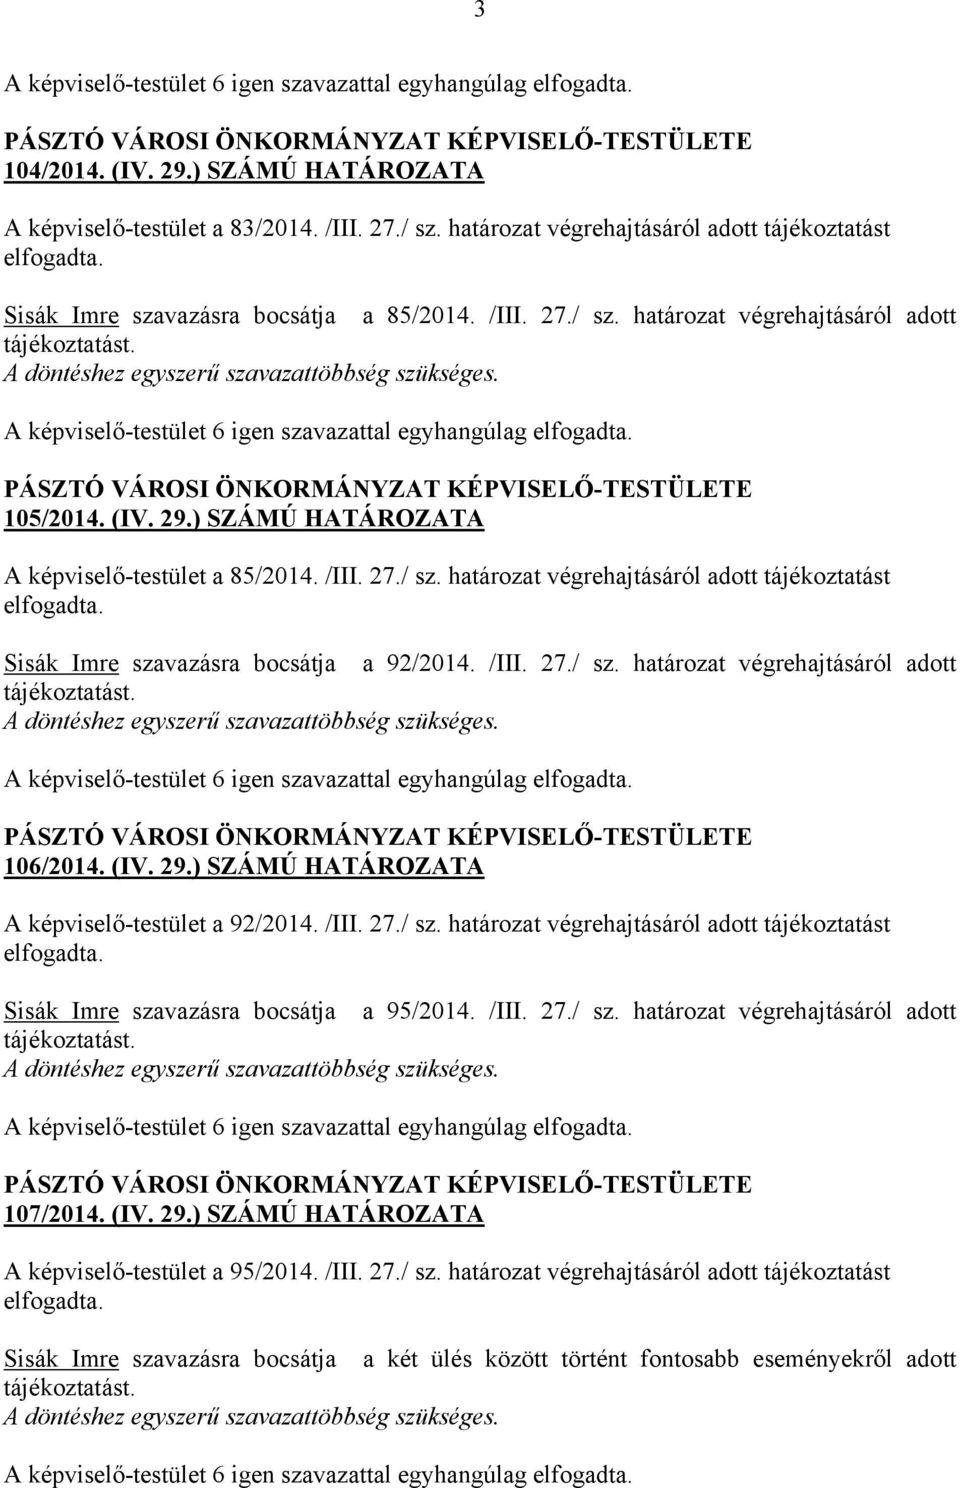 (IV. 29.) SZÁMÚ HATÁROZATA A képviselő-testület a 92/2014. /III. 27./ sz. határozat végrehajtásáról adott tájékoztatást elfogadta. Sisák Imre szavazásra bocsátja a 95/2014. /III. 27./ sz. határozat végrehajtásáról adott tájékoztatást. 107/2014.